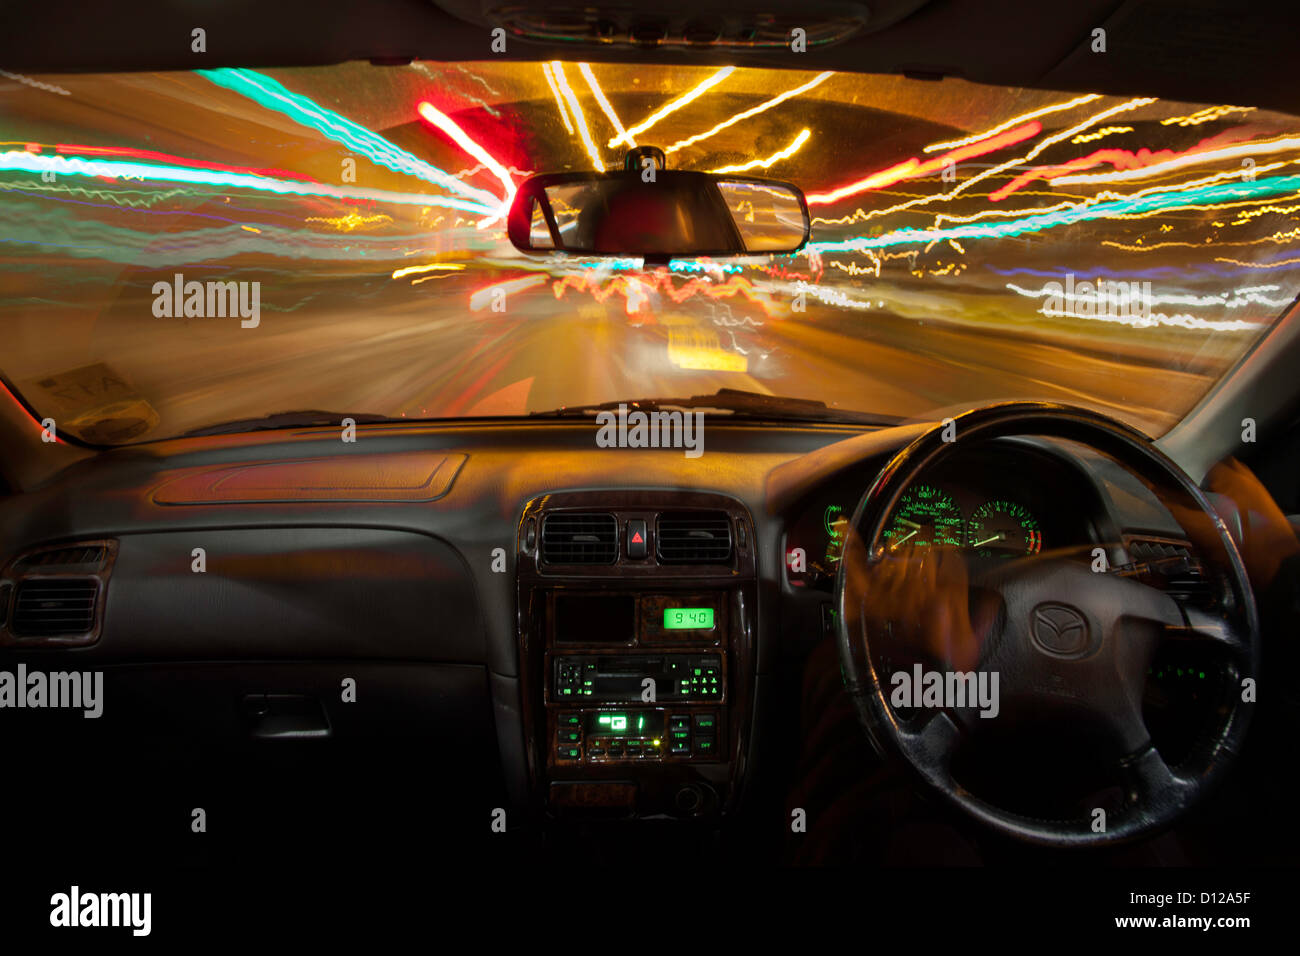 Trinken Sie, fahren, Aufnahme des Innenraum nachts zu bewegen, mit Lichtern streaming vorbei um zu veranschaulichen den Einfluss von Alkohol oder Drogen am Steuer Stockfoto